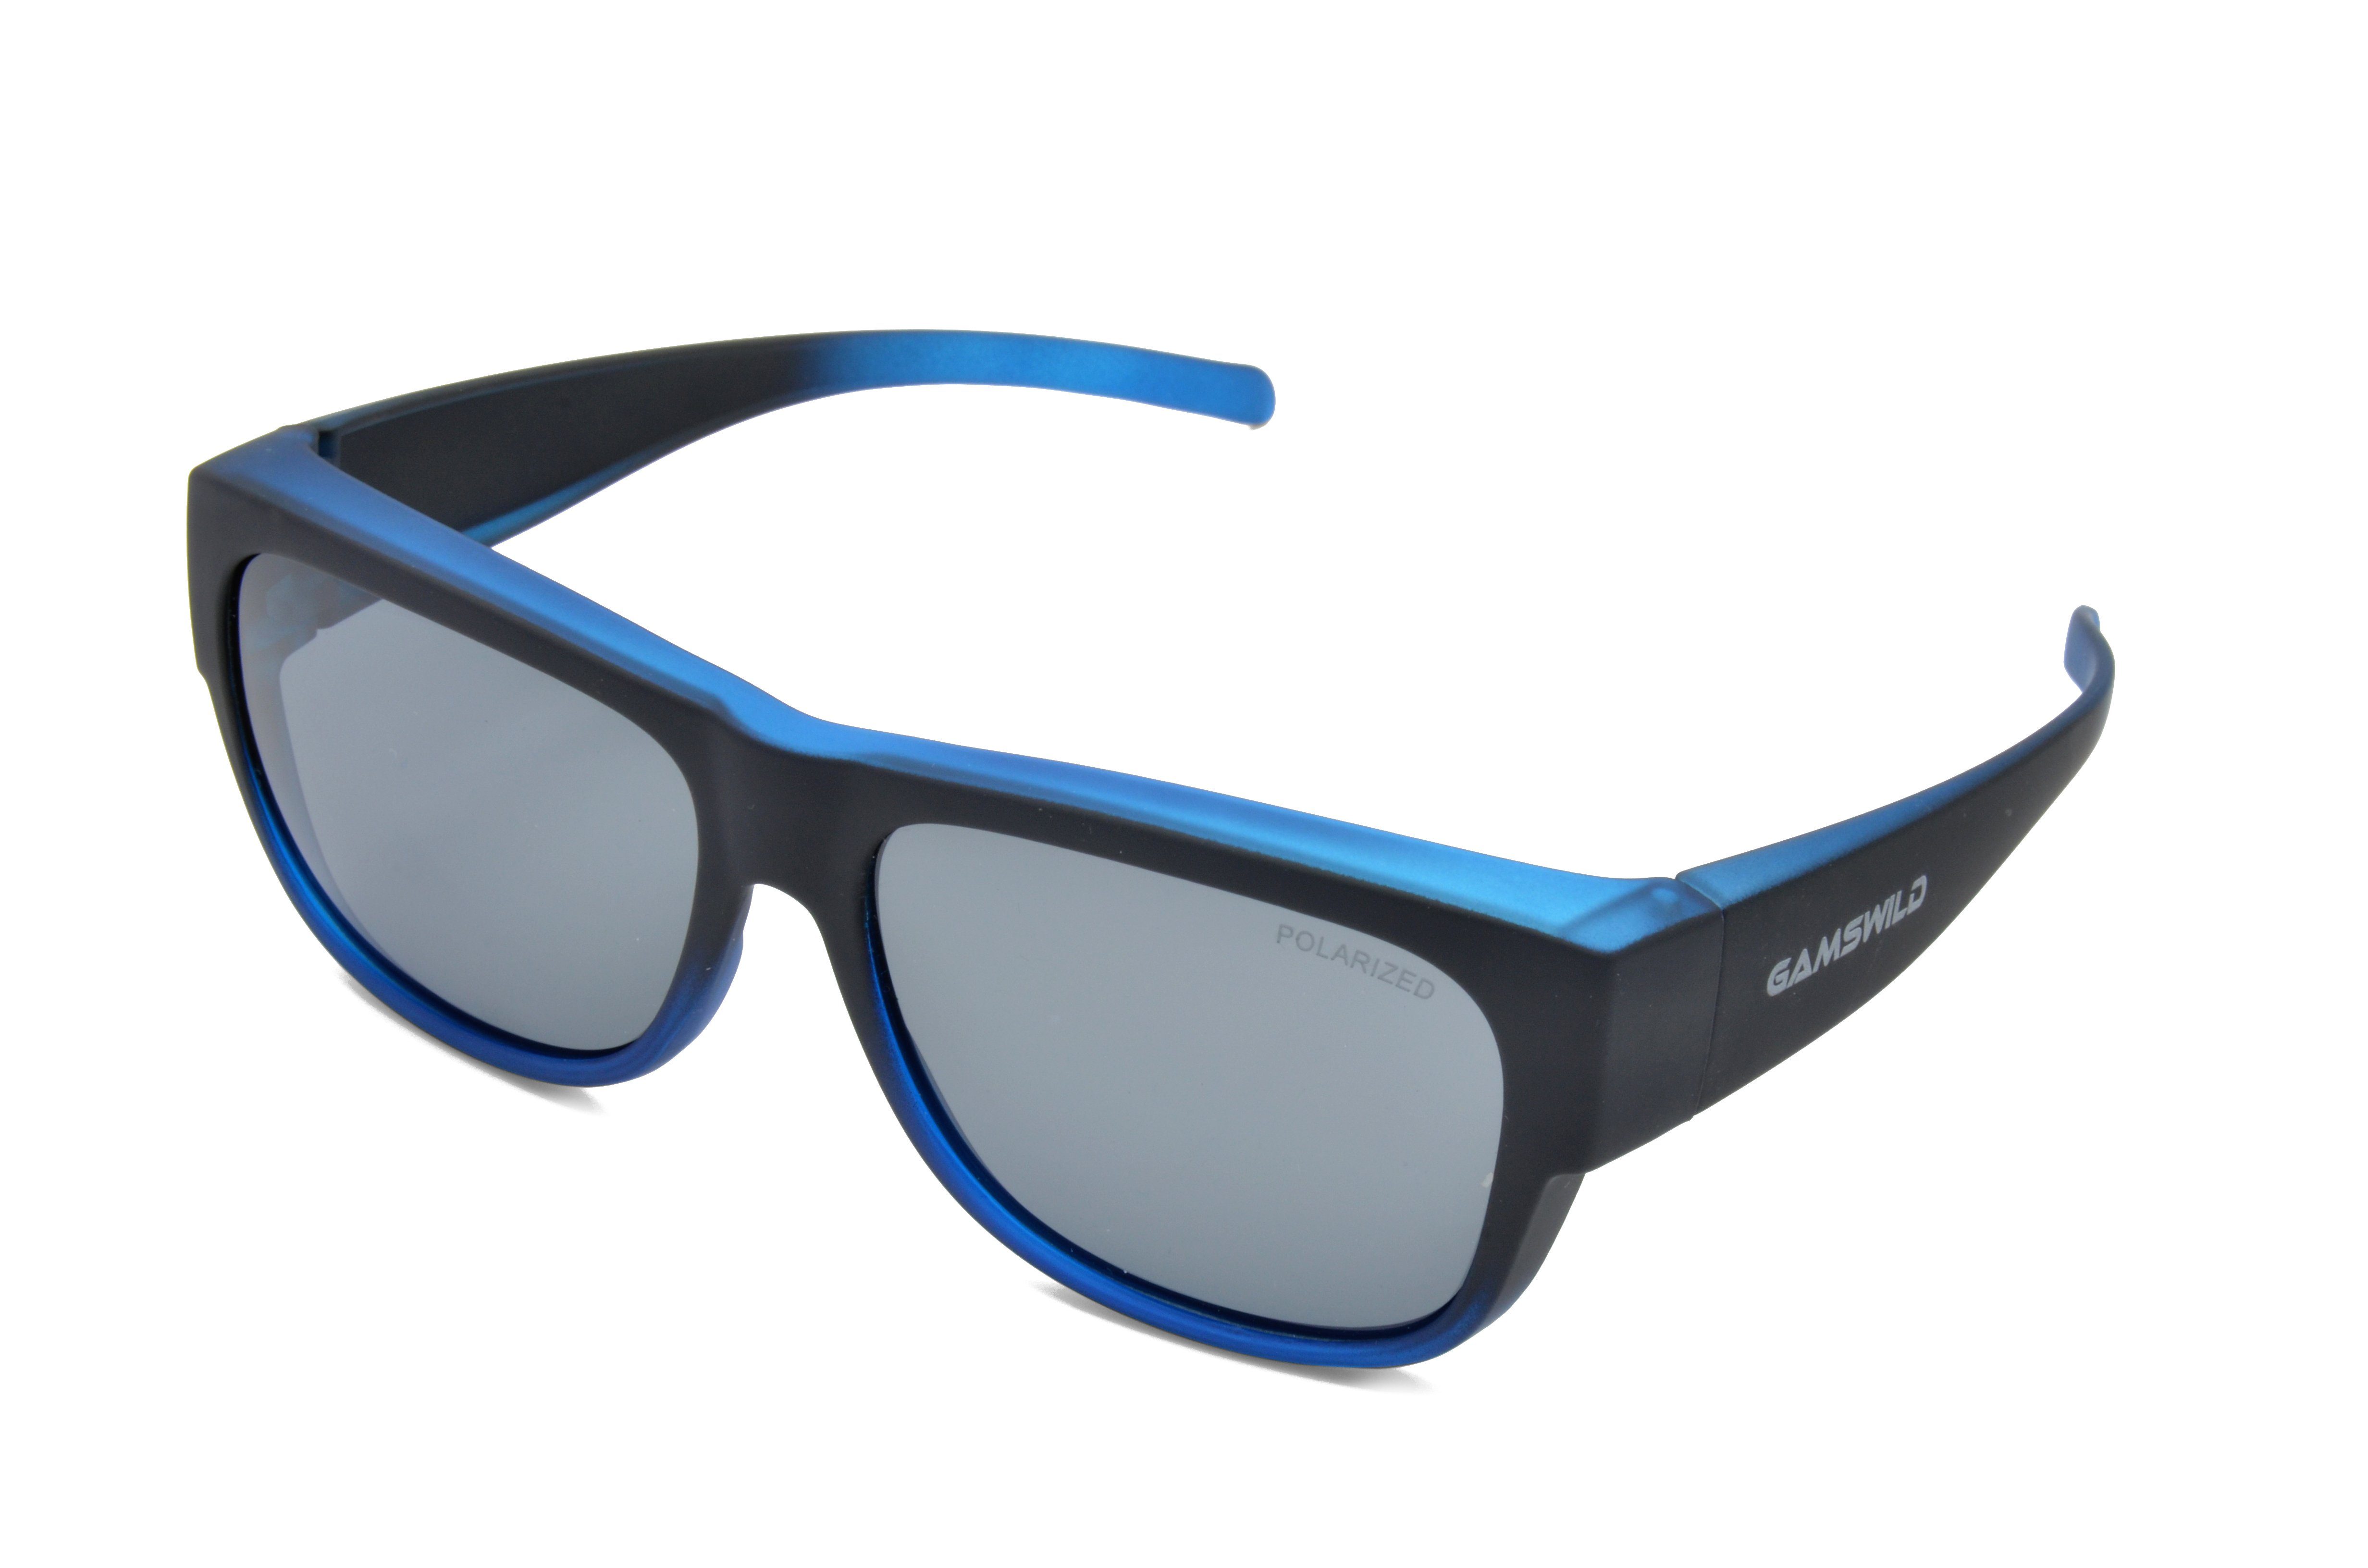 Gamswild Sportbrille WS6022 Überbrille Sonnenbrille Sportbrille Damen Herren, schwarz G15, blau, beere, unisex, universelle Passform, Rubbertouchbeschichtung